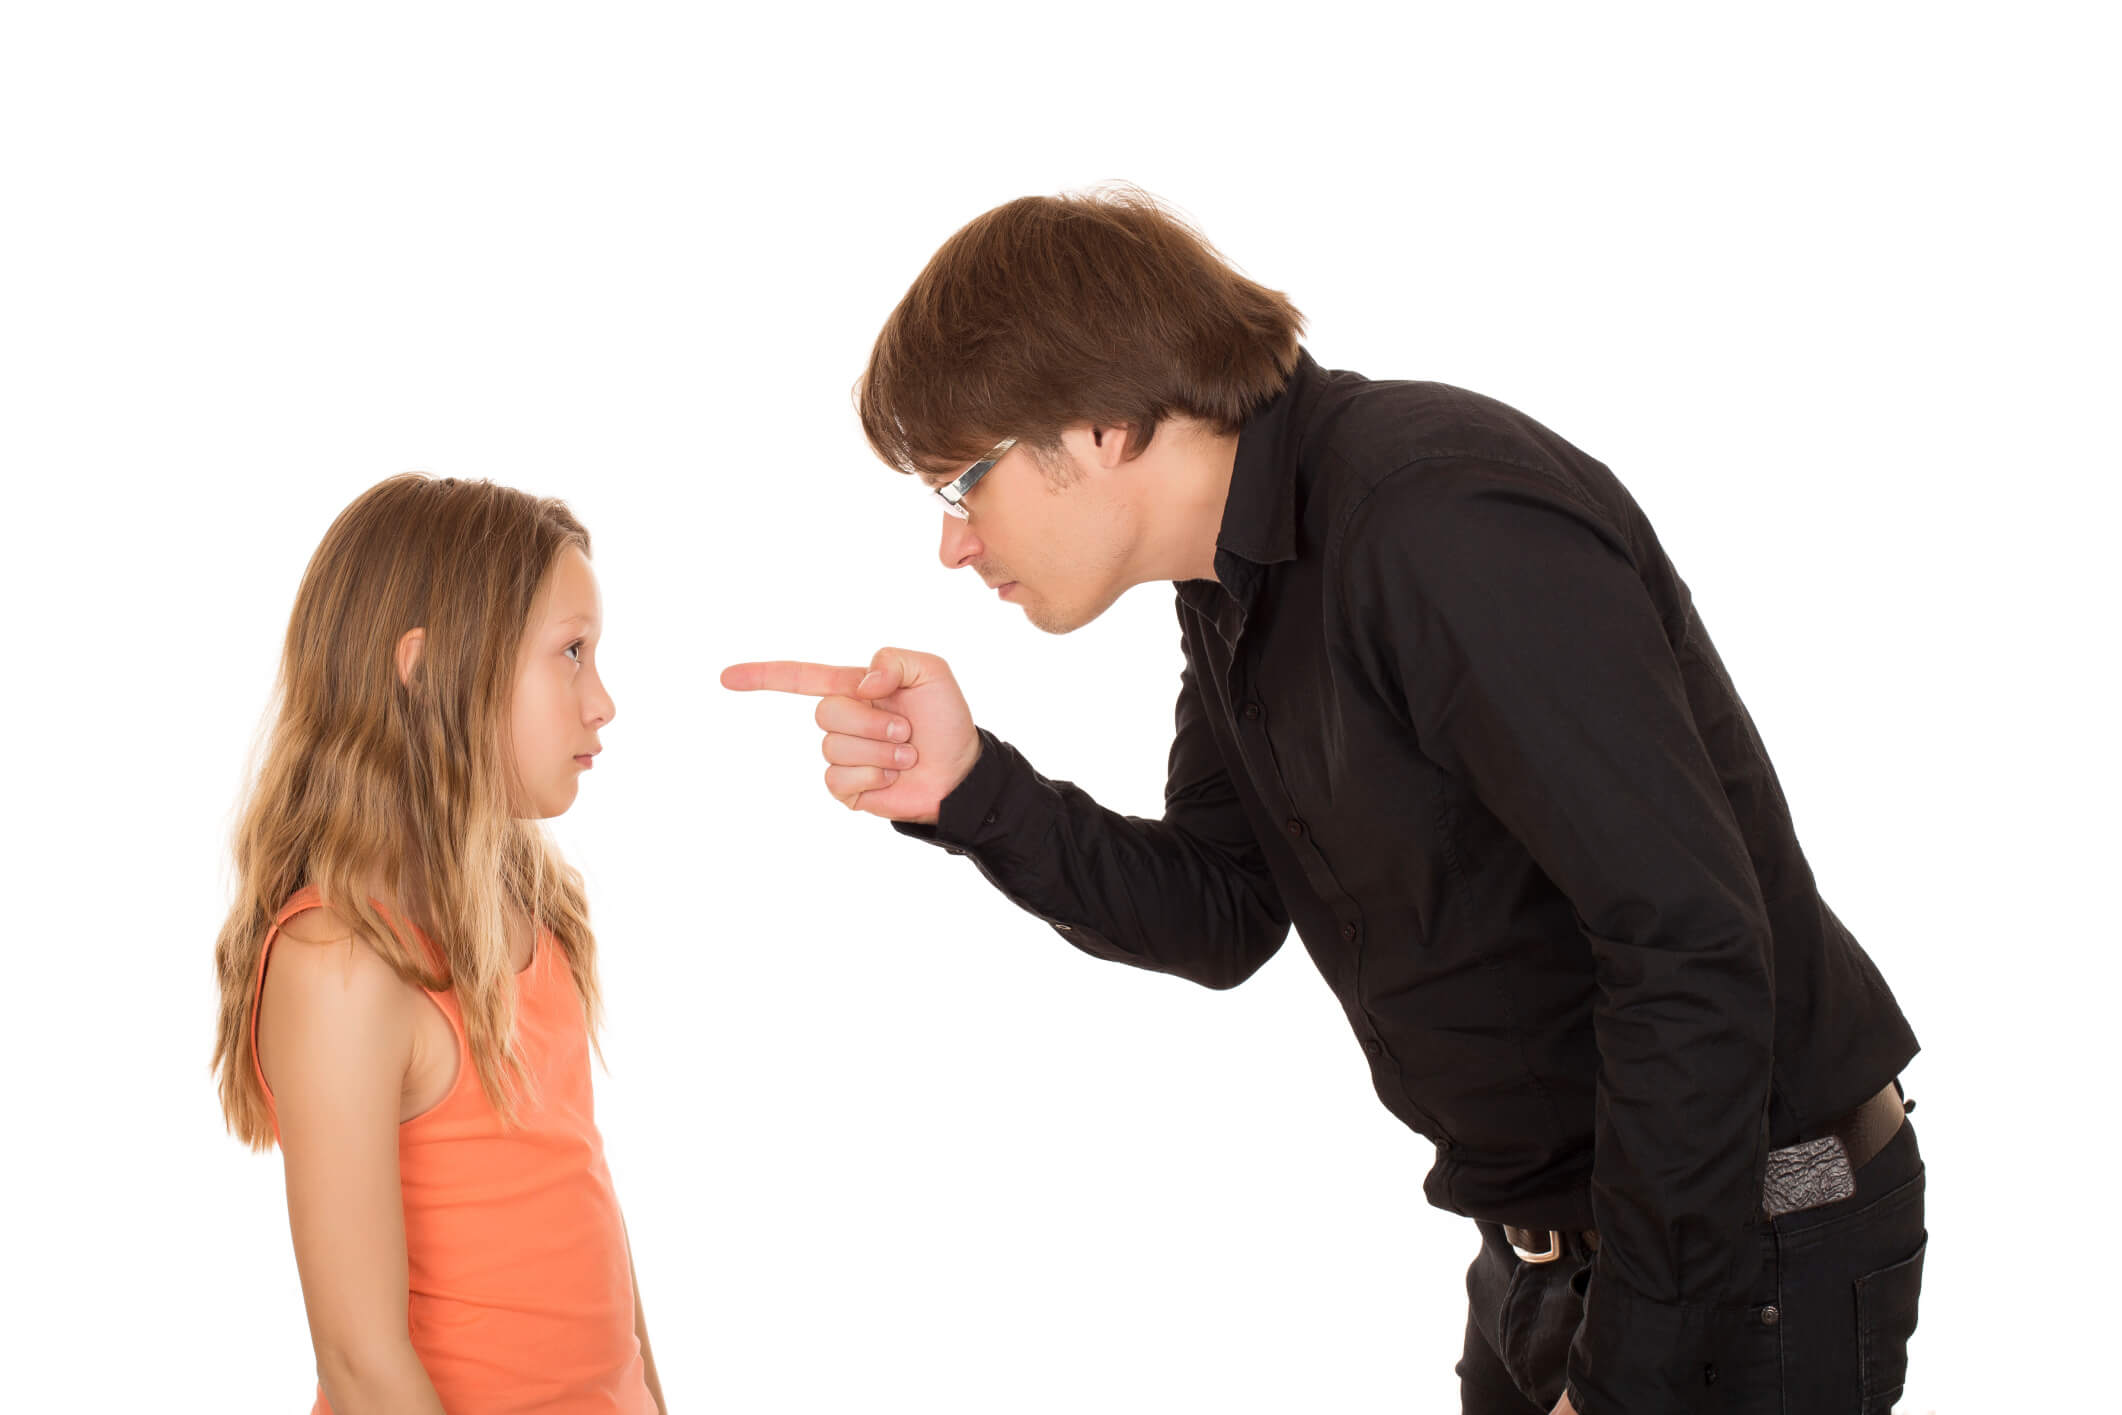 pai bravo apontando o dedo para a filha; pai repreendendo sua filha